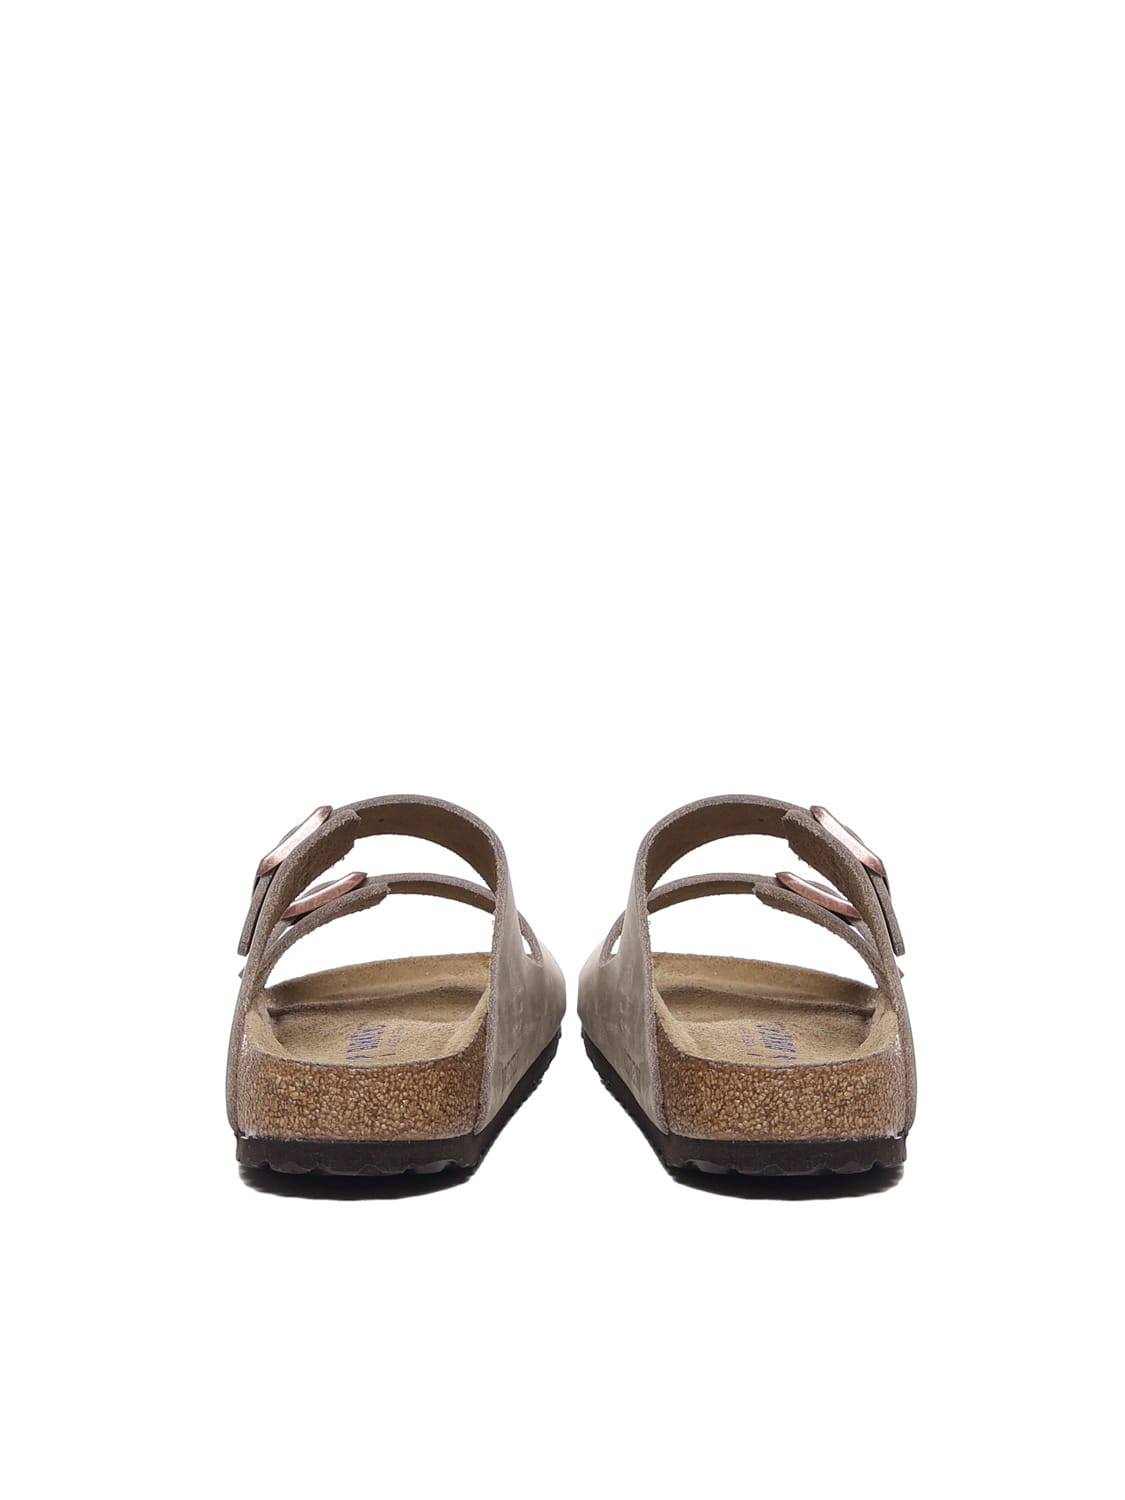 Shop Birkenstock Arizona Sandals In Tabacco Brown